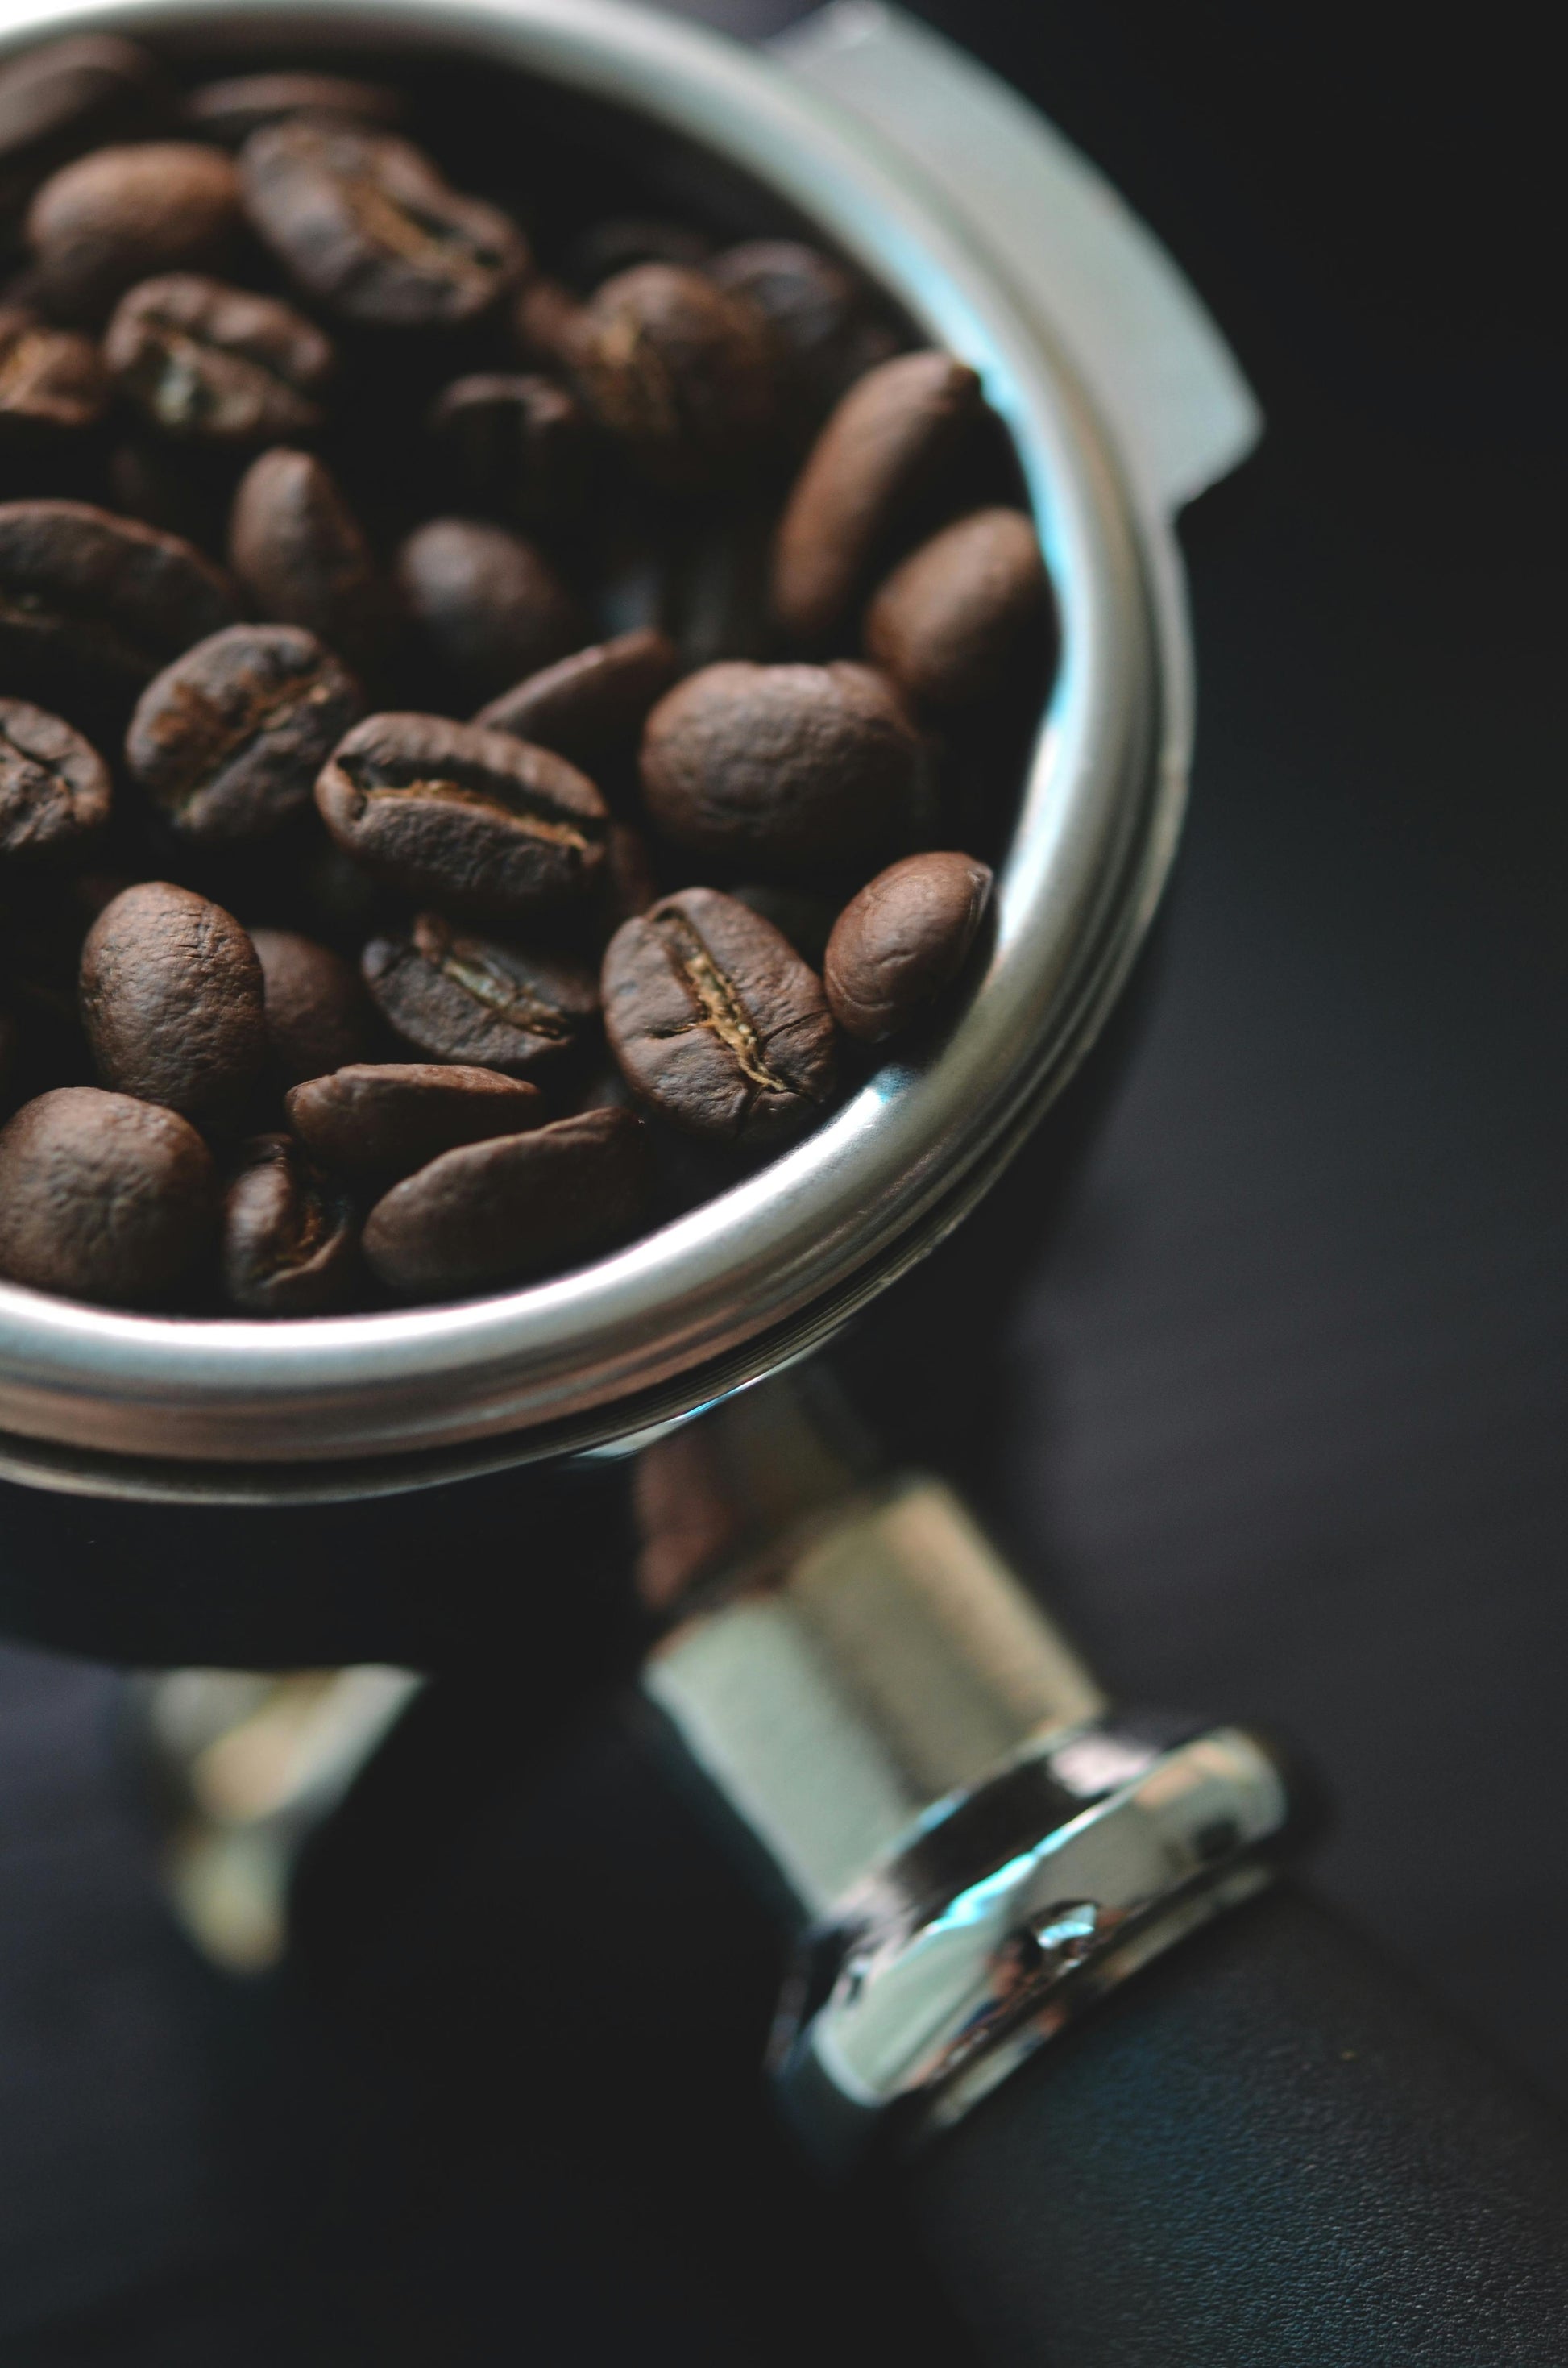 Coffeebre Decaf Specialty Coffee Blend- COFFEEBRE 